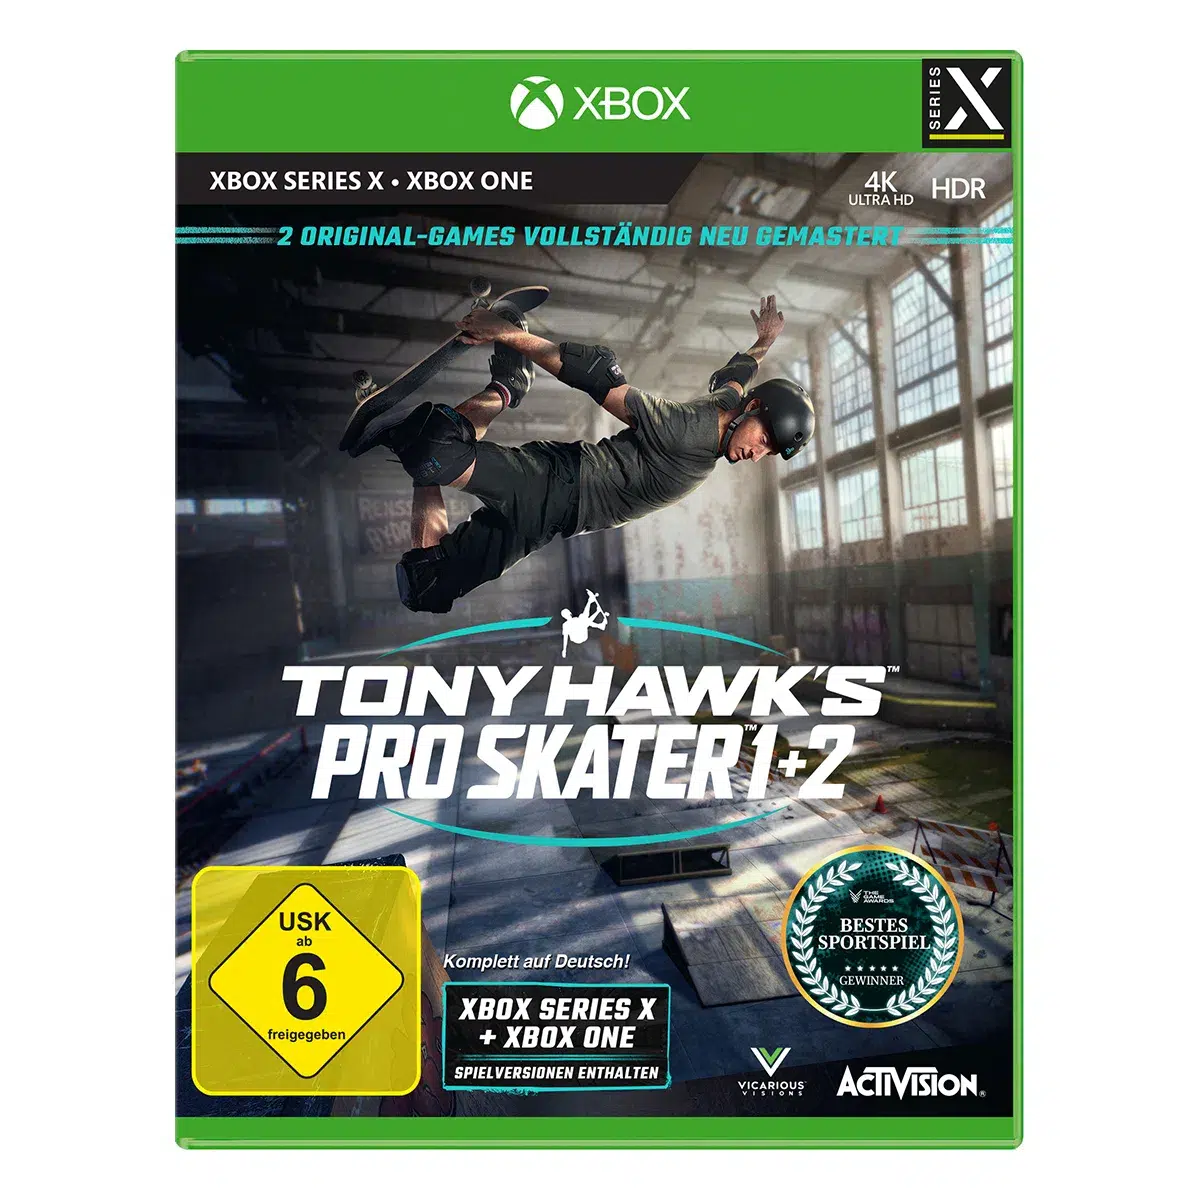 Tony Hawk's Pro Skater 1+2 - XSRX